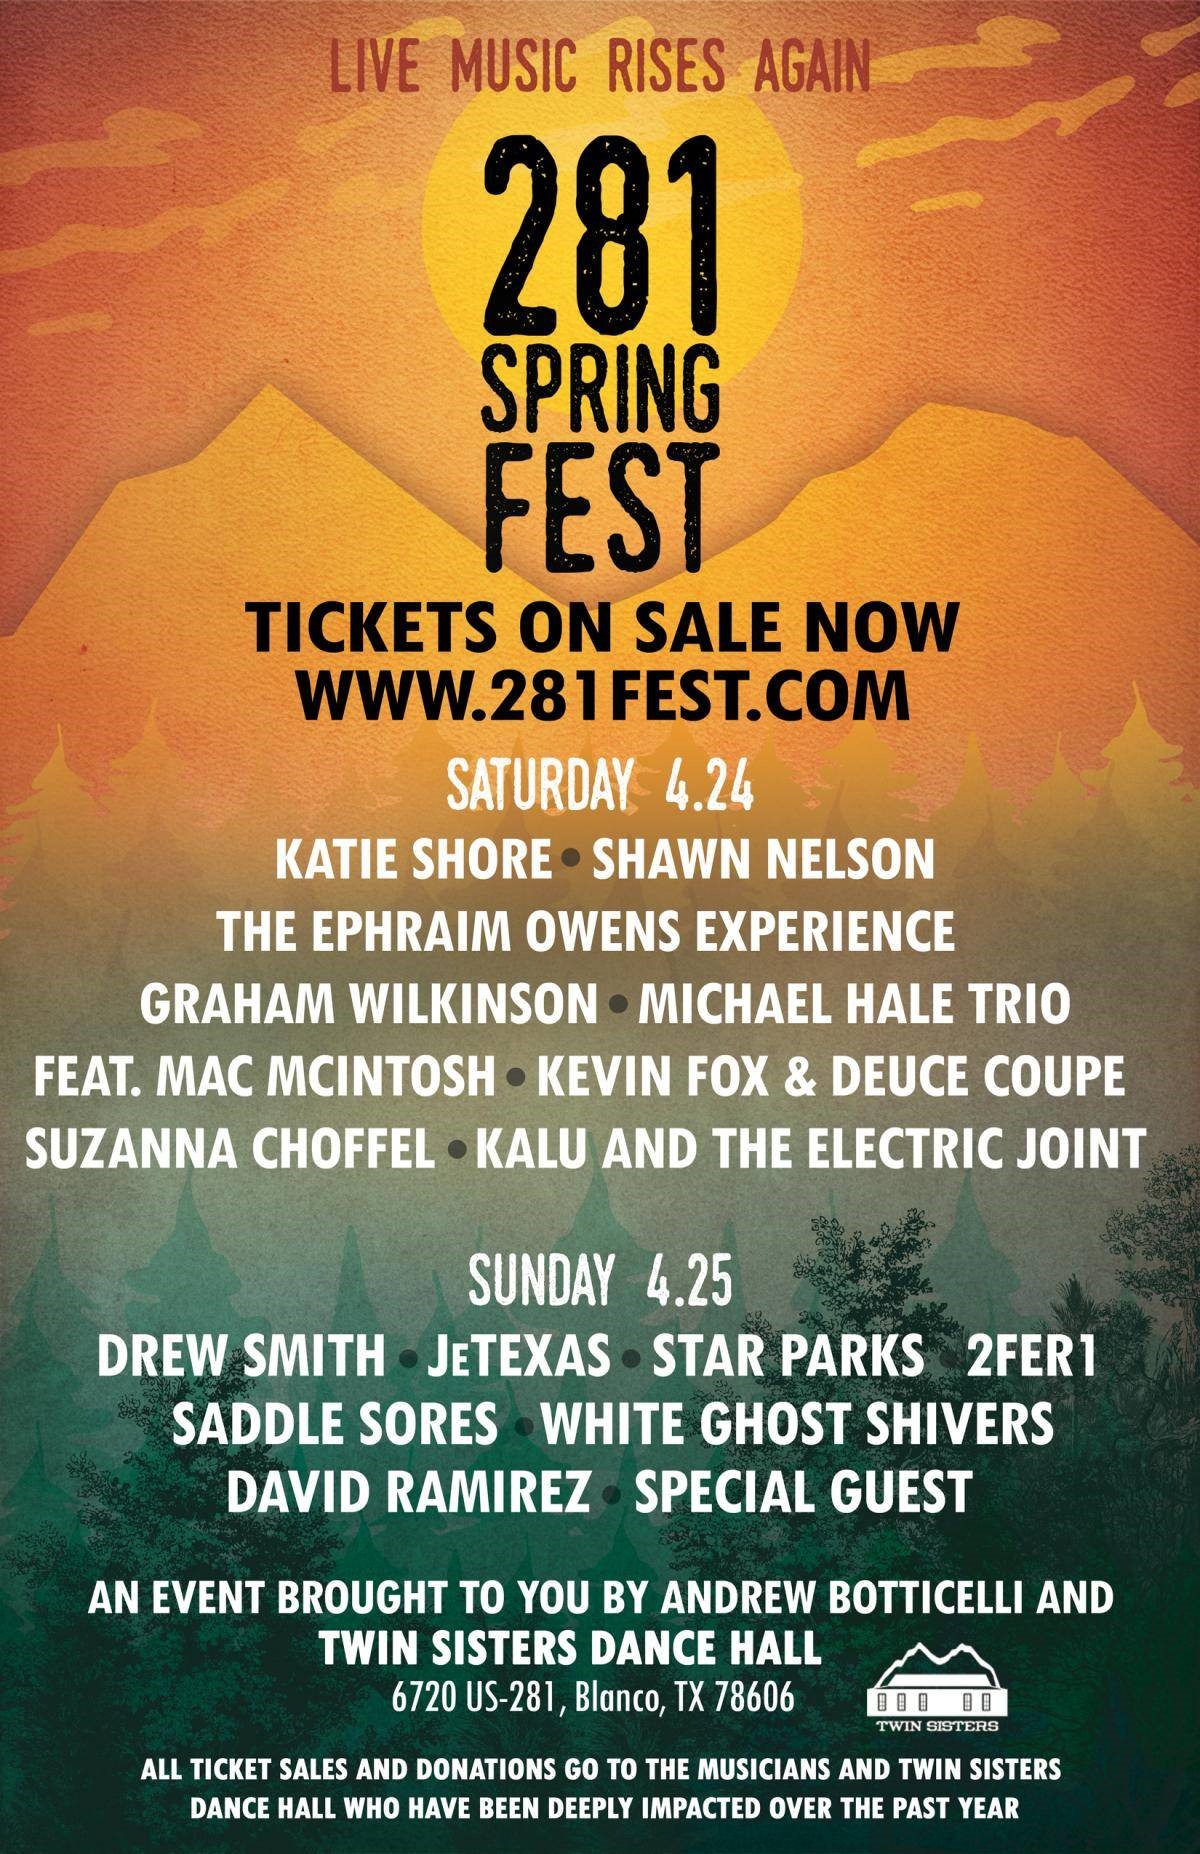 281 Spring Fest